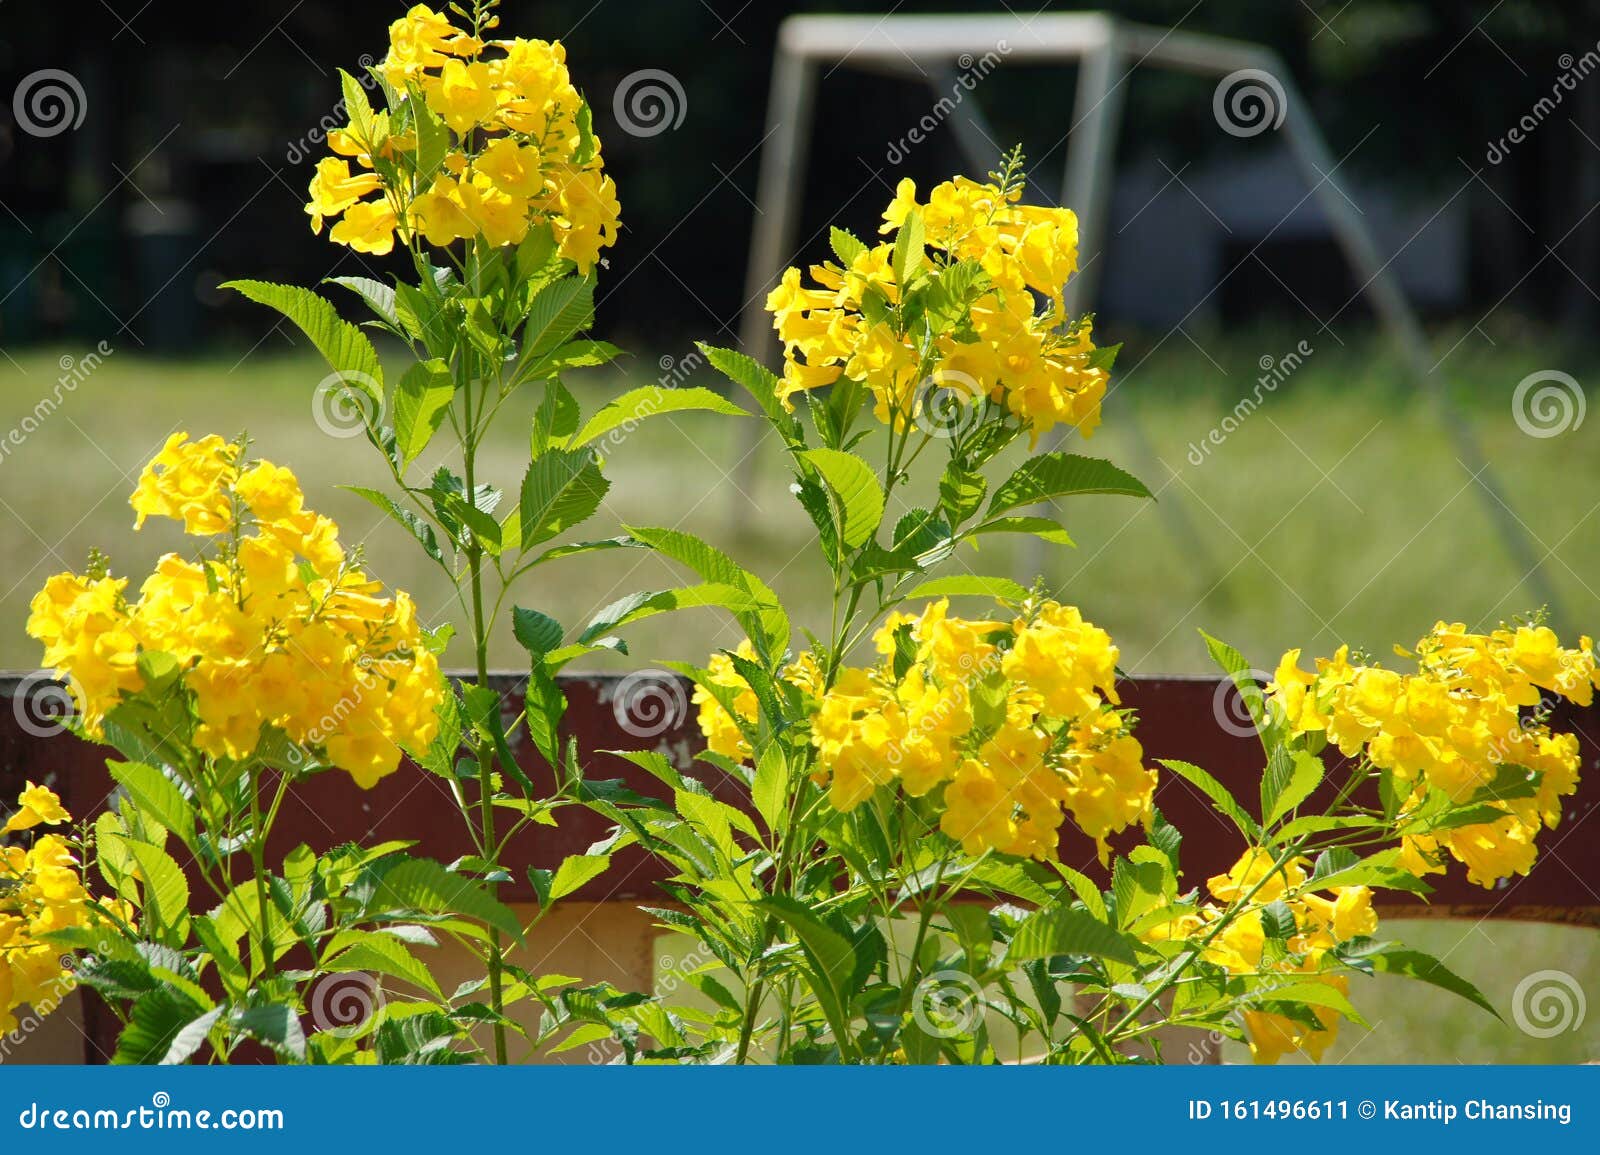 Arbre vert de nombreuses fleurs jaunes, très belles un petit arbre, une image d'arrière-plan